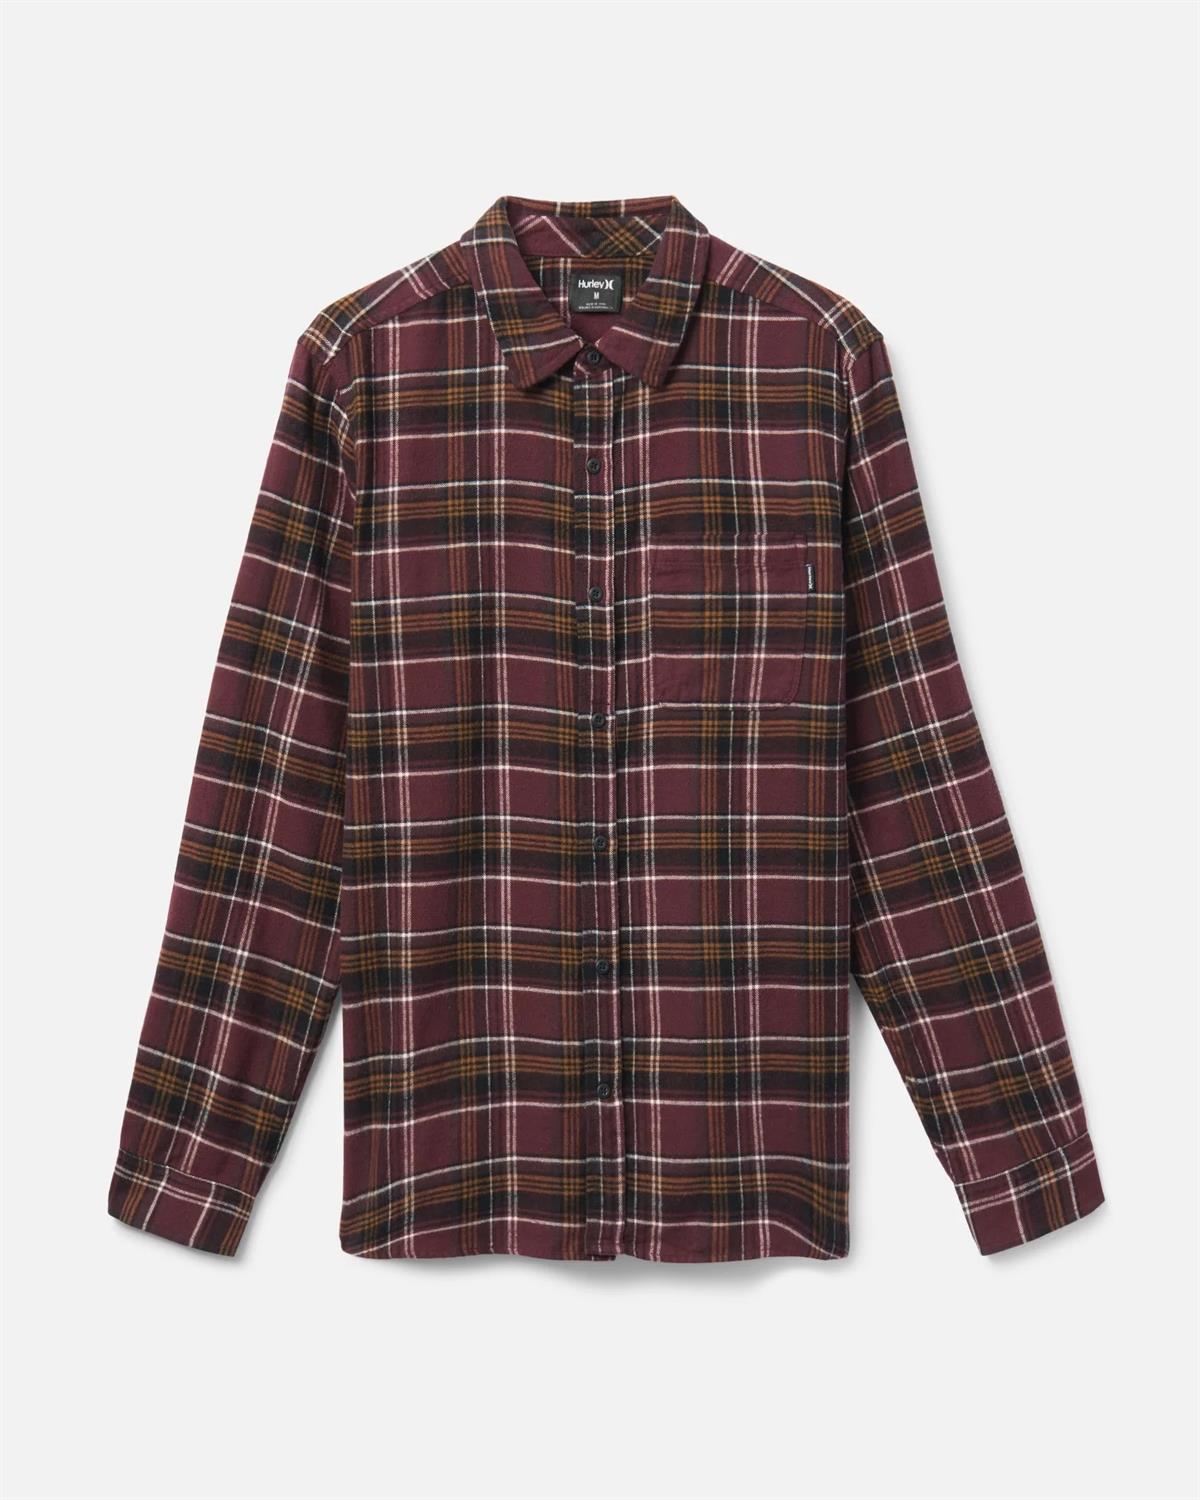 beetje Aanpassingsvermogen uitbreiden Hurley Portland Organic Flannel Shirt